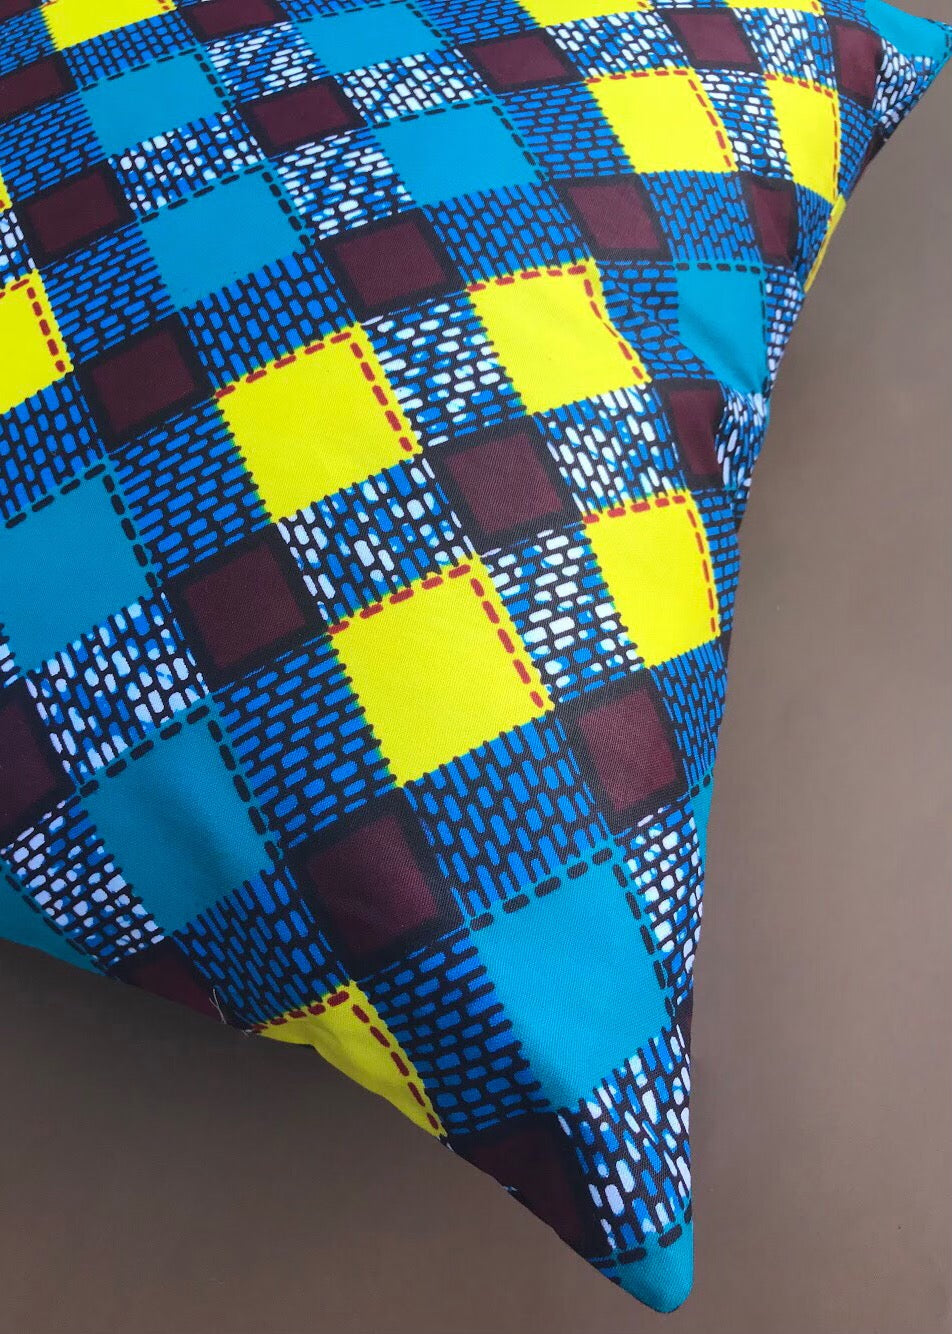 Blue, Yellow & Brown Ankara Cushion Cover